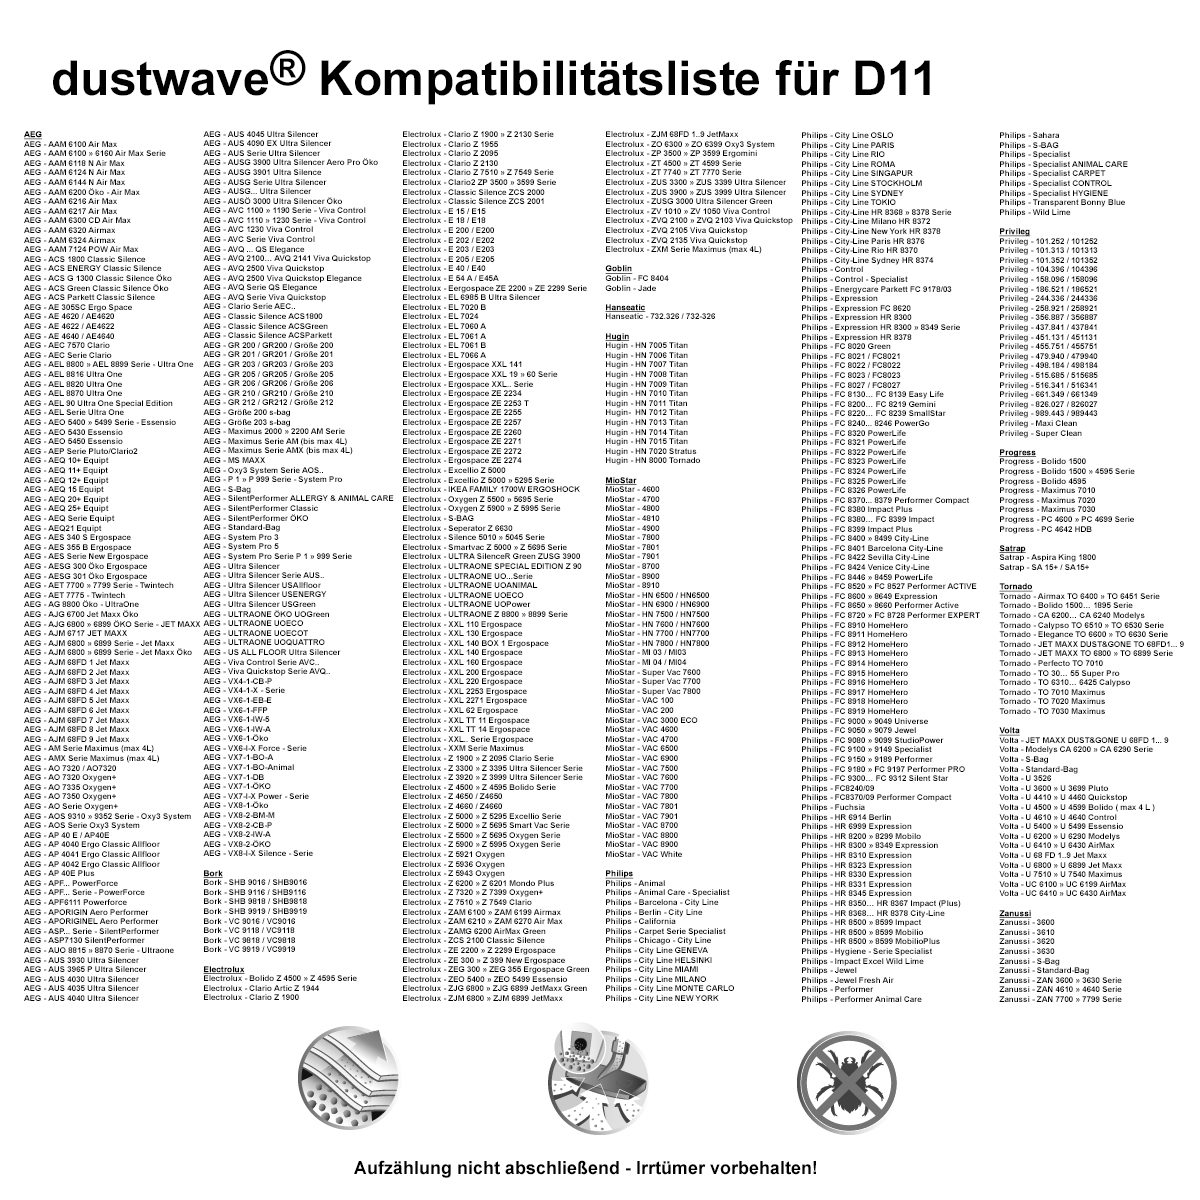 10 Staubsaugerbeutel + 1 Microfilter passend für AEG VX6-2-FFP Staubsauger (Serie X Force) von dustwave® Qualität Made in Germany